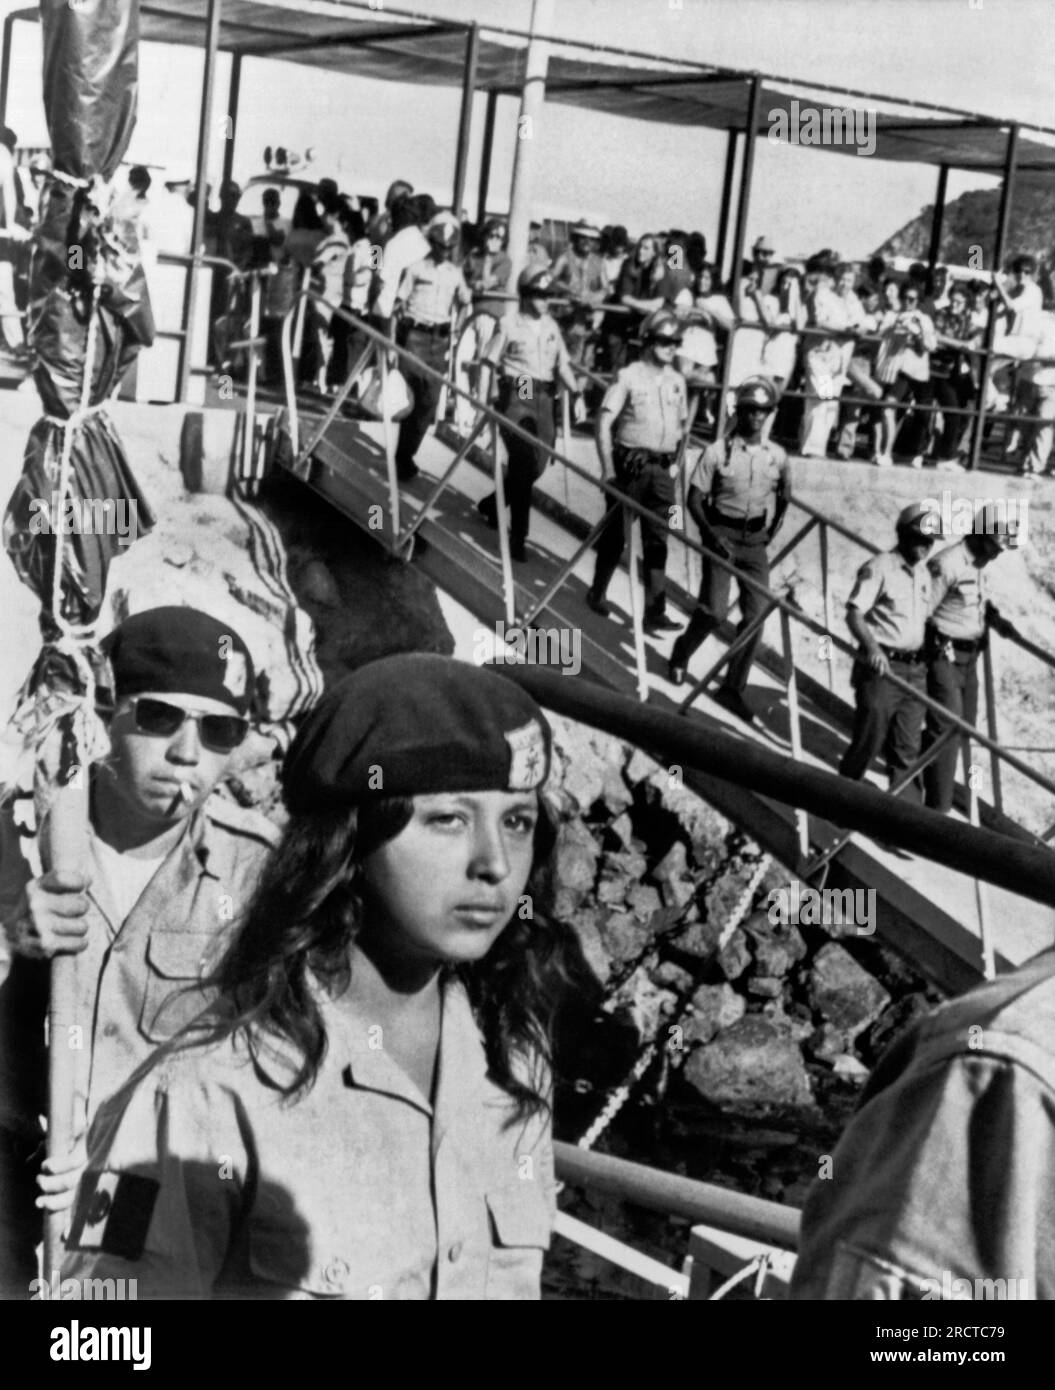 Santa Catalina Island, Kalifornien: 23. September 1972. Mitglieder der "Brown Berets", einer militanten Chicano-Organisation, werden von den Stellvertretern des Los Angeles County Sheriffs von Santa Catalina Island begleitet, nachdem sie sie 24 Tage lang besetzt hatten. Stockfoto